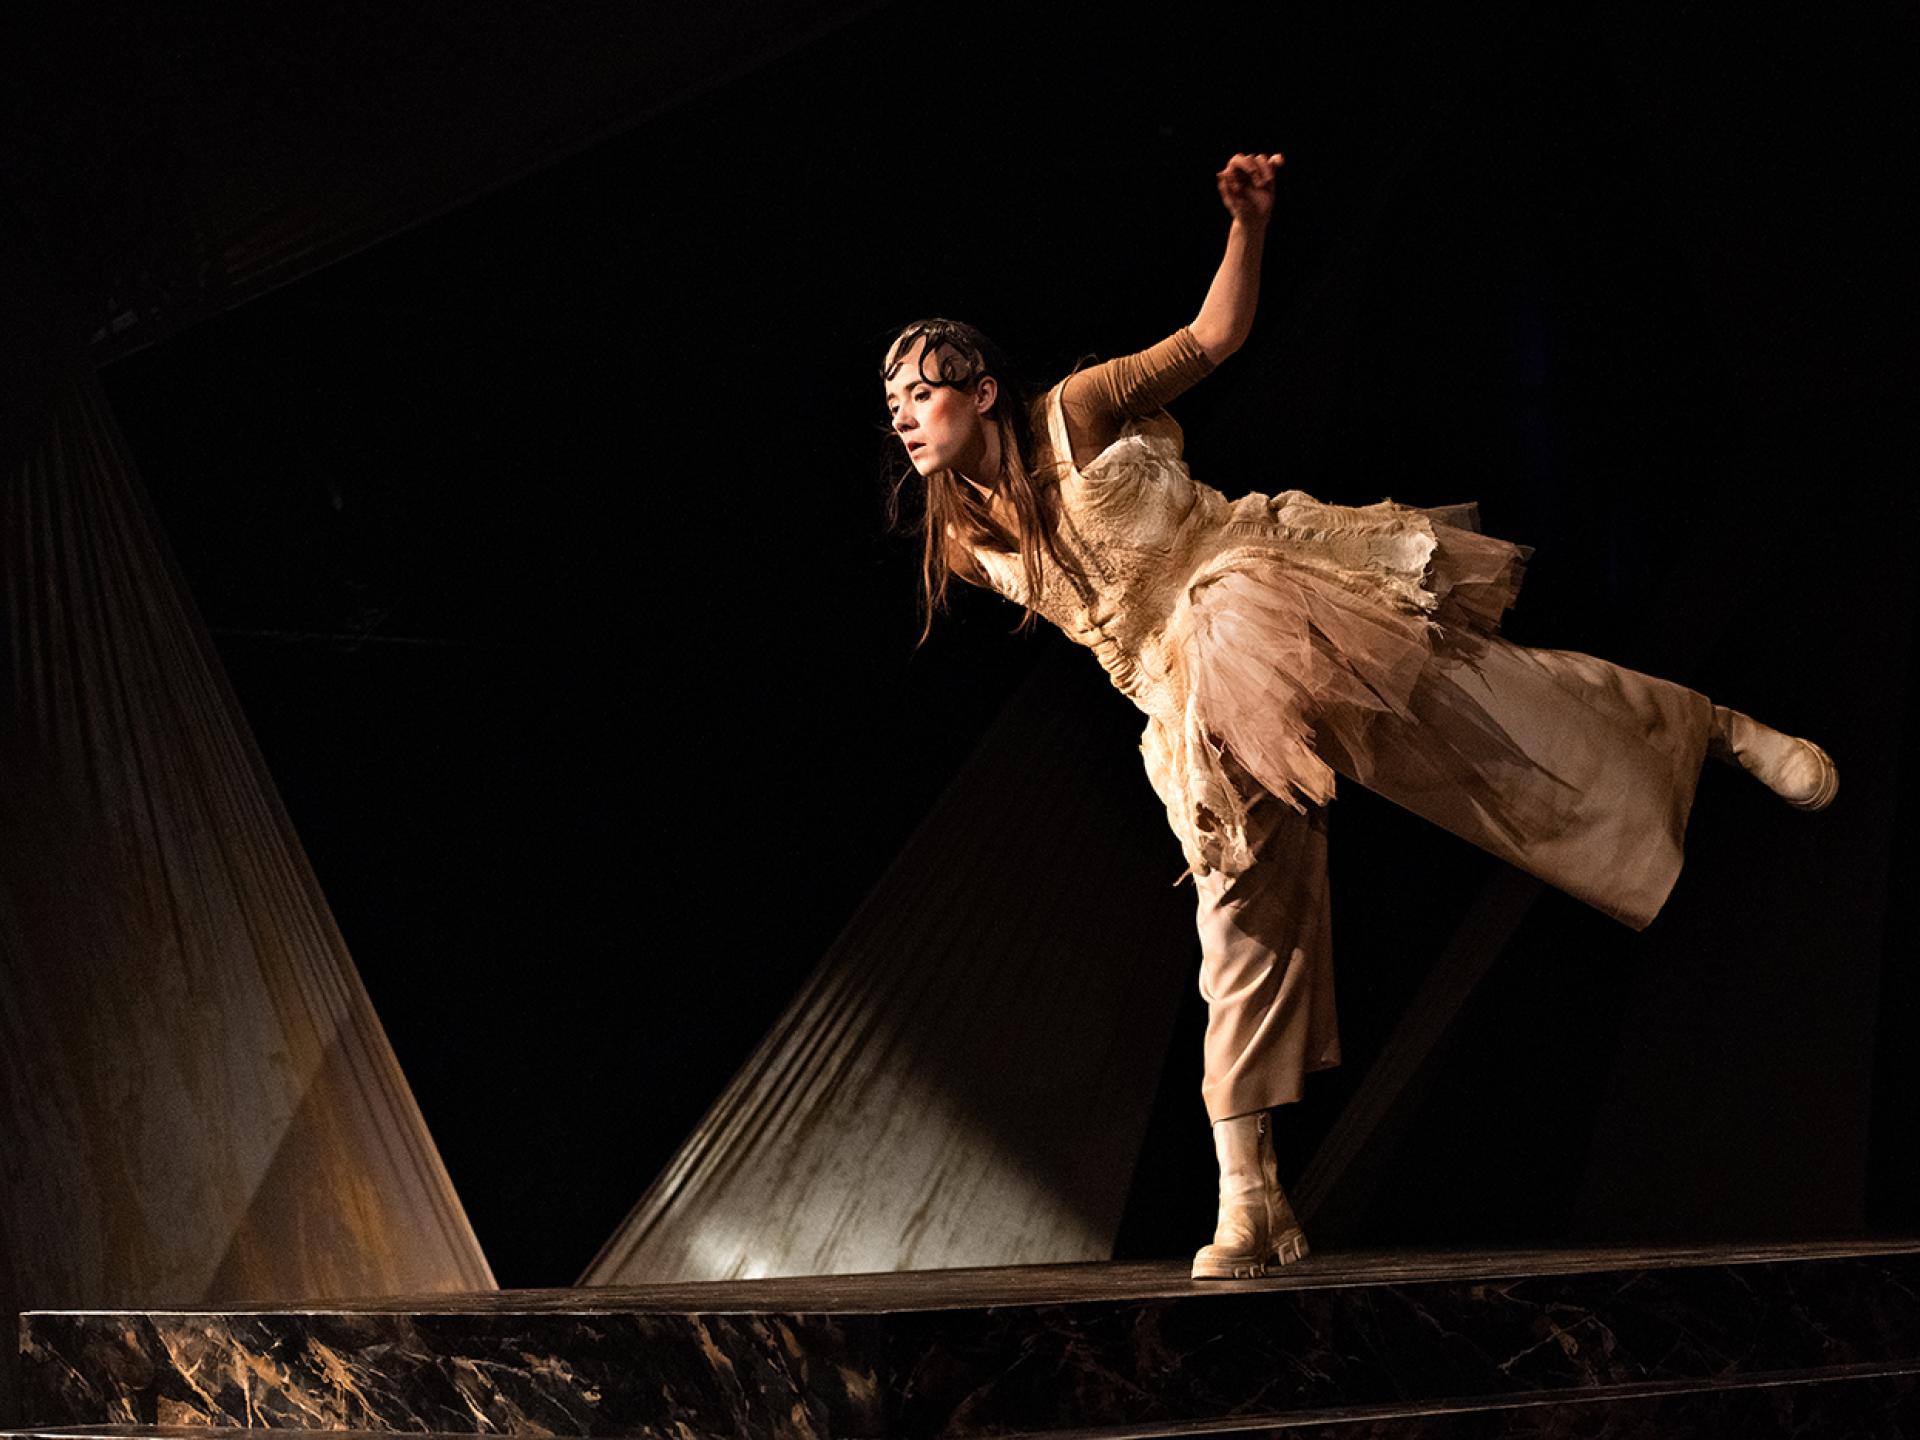  Die Figur Tyll (gespielt von Esra Schreier) steht auf einem Bein und schaut nach unten in der Inszenierung von "Tyll" am Theater Heidelberg im Dezember 2021.